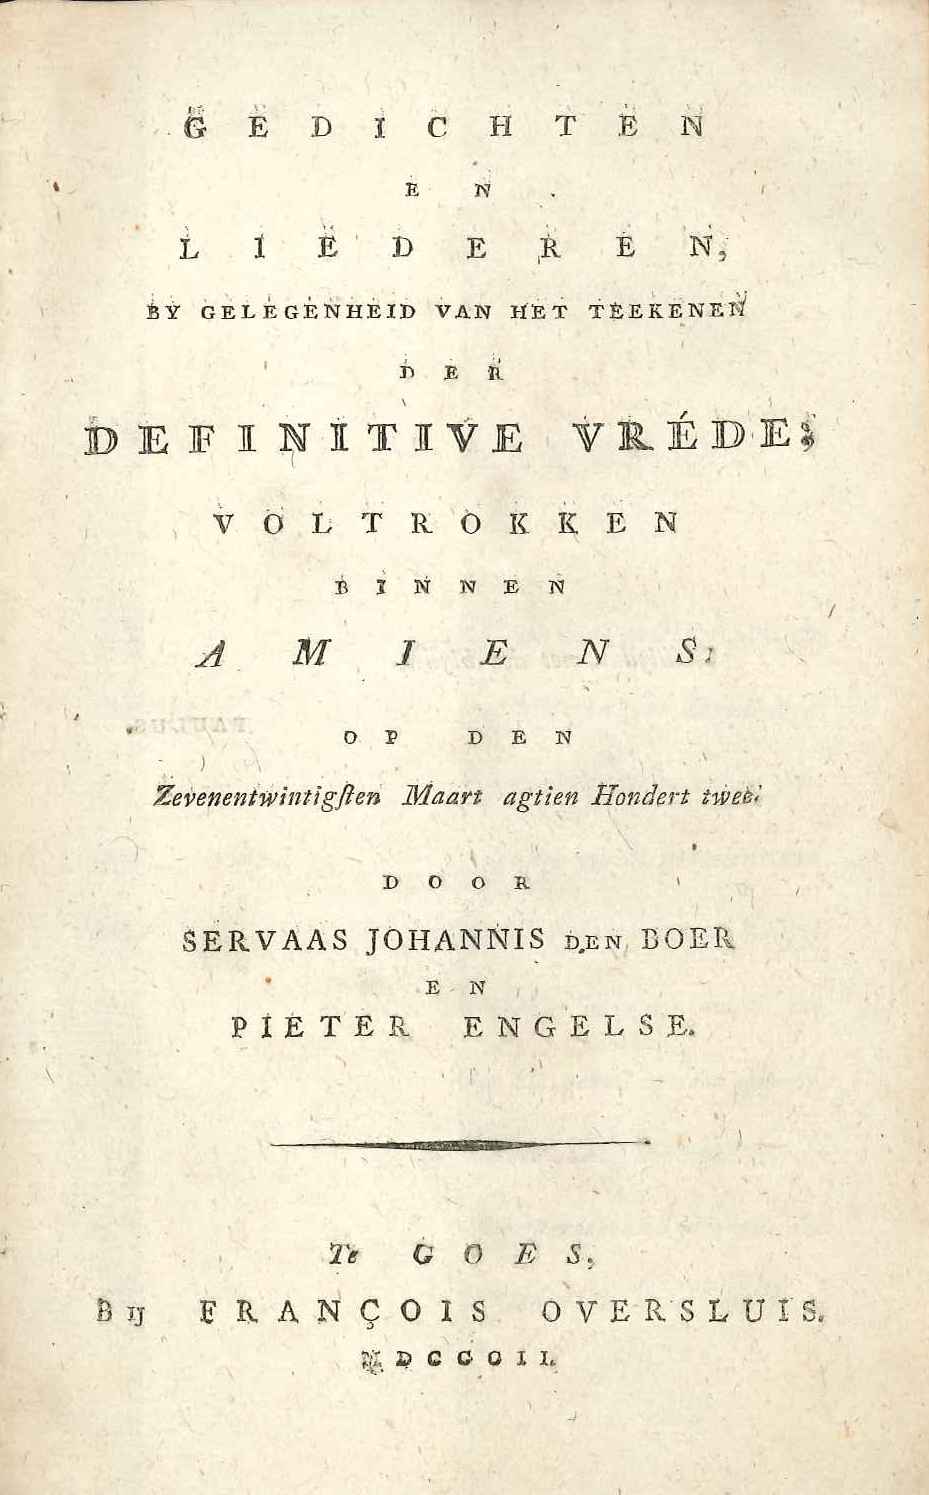 Gedichten en liederen op de Vrede van Amiens, S.J. den Boer en P. Engelse. Goes 1802.